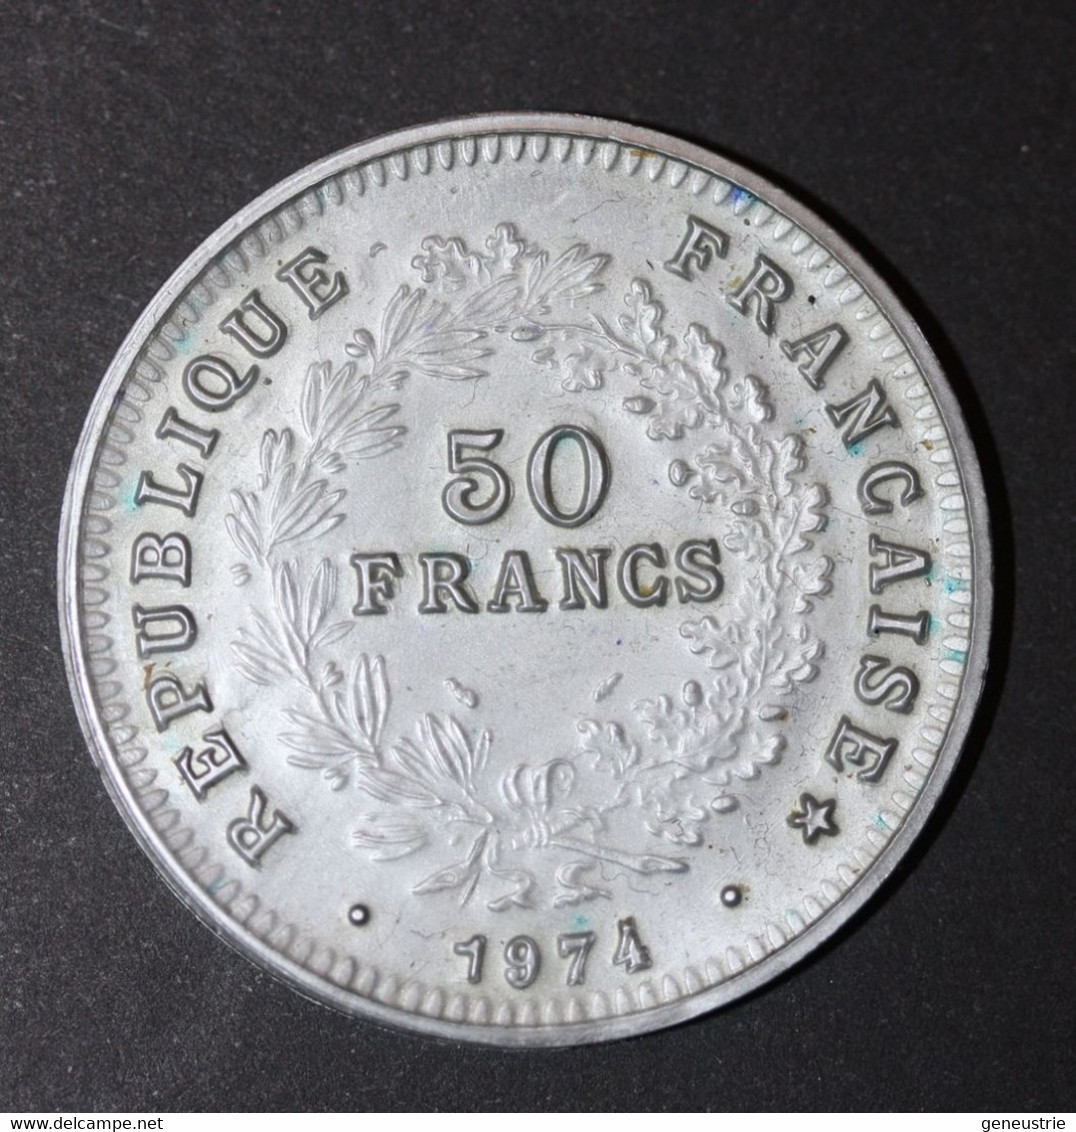 Pièce De 50 Francs Type Hercule 1974 - Jeton Plastique école En Francs Années 60 - Coins School Token - Professionali / Di Società